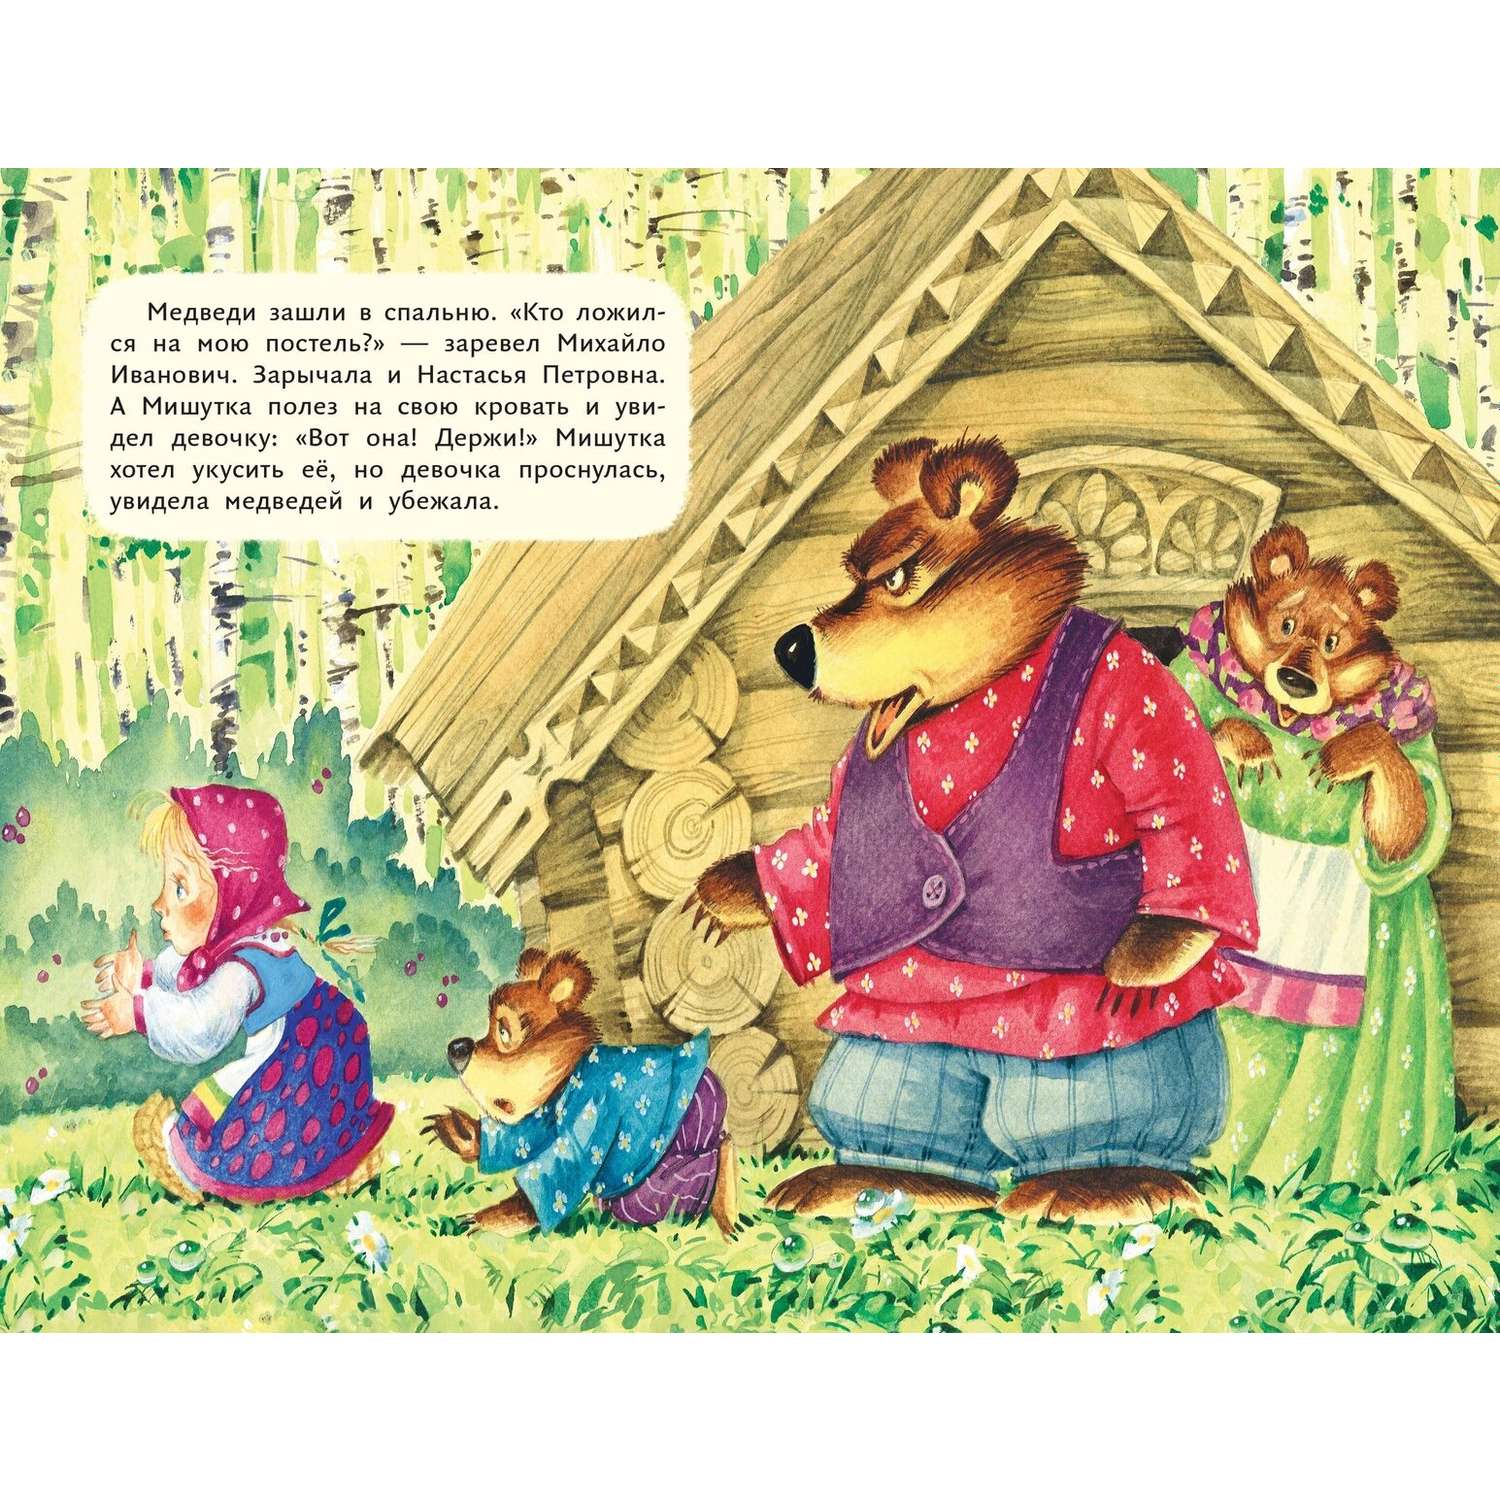 Книга Три медведя иллюстрации Якимовой - фото 5